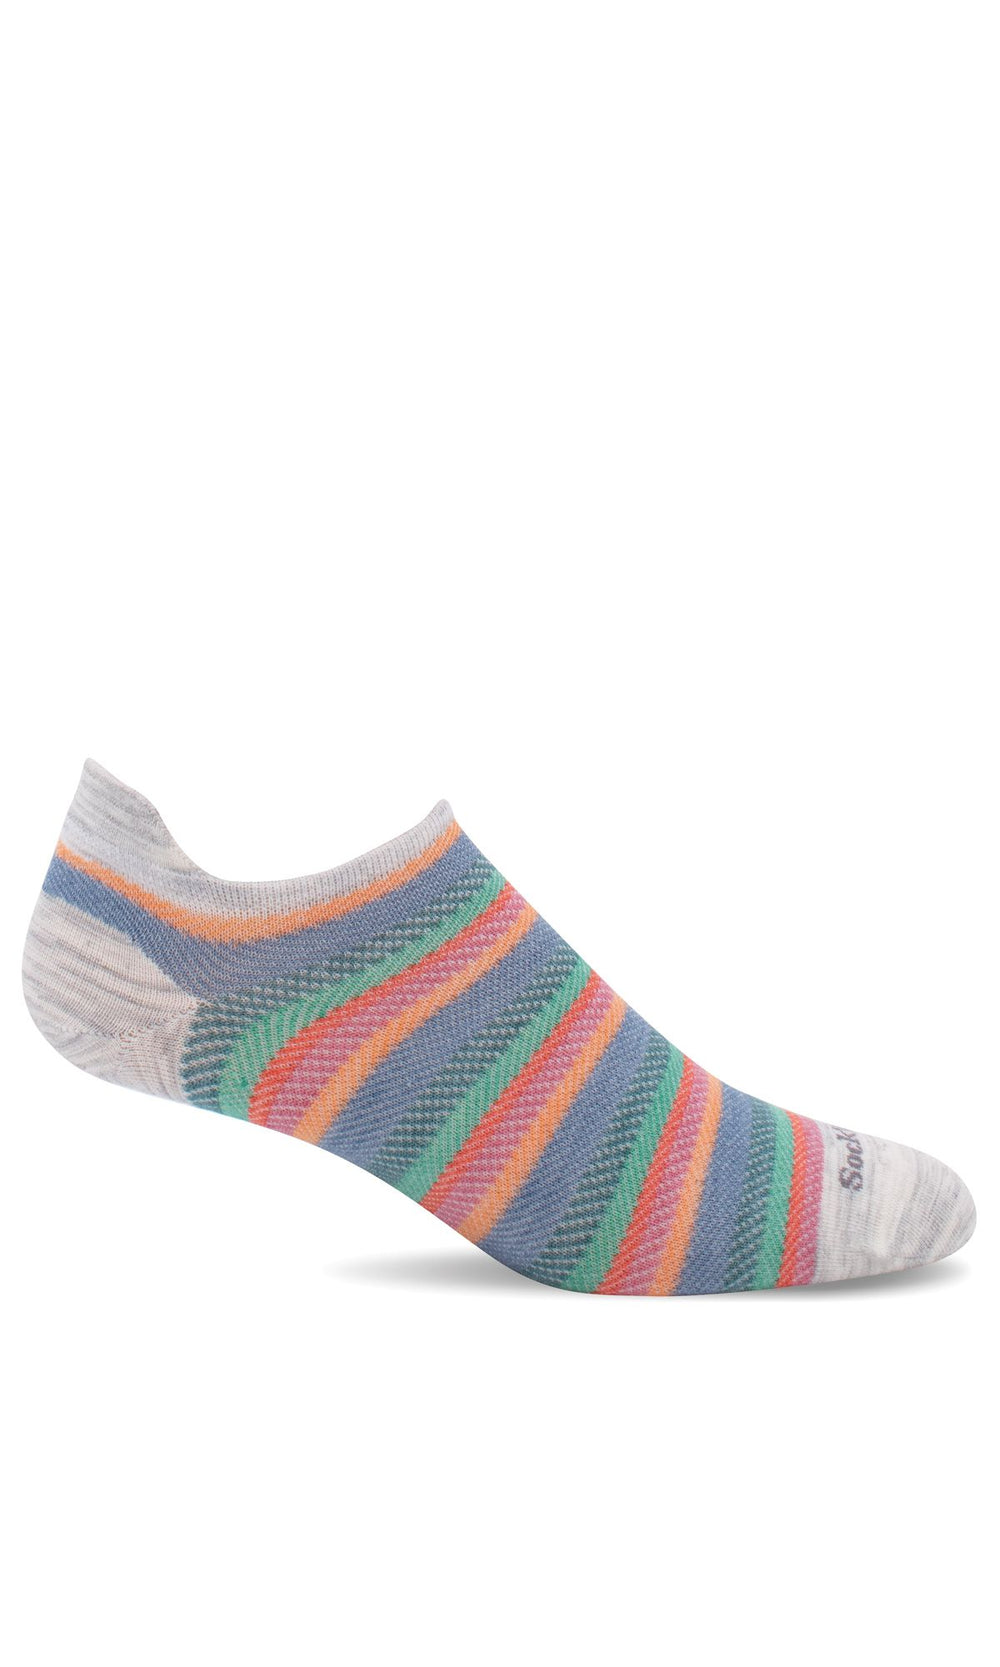 Sockwell Tipsy Essential Comfort Socks (Women’s)